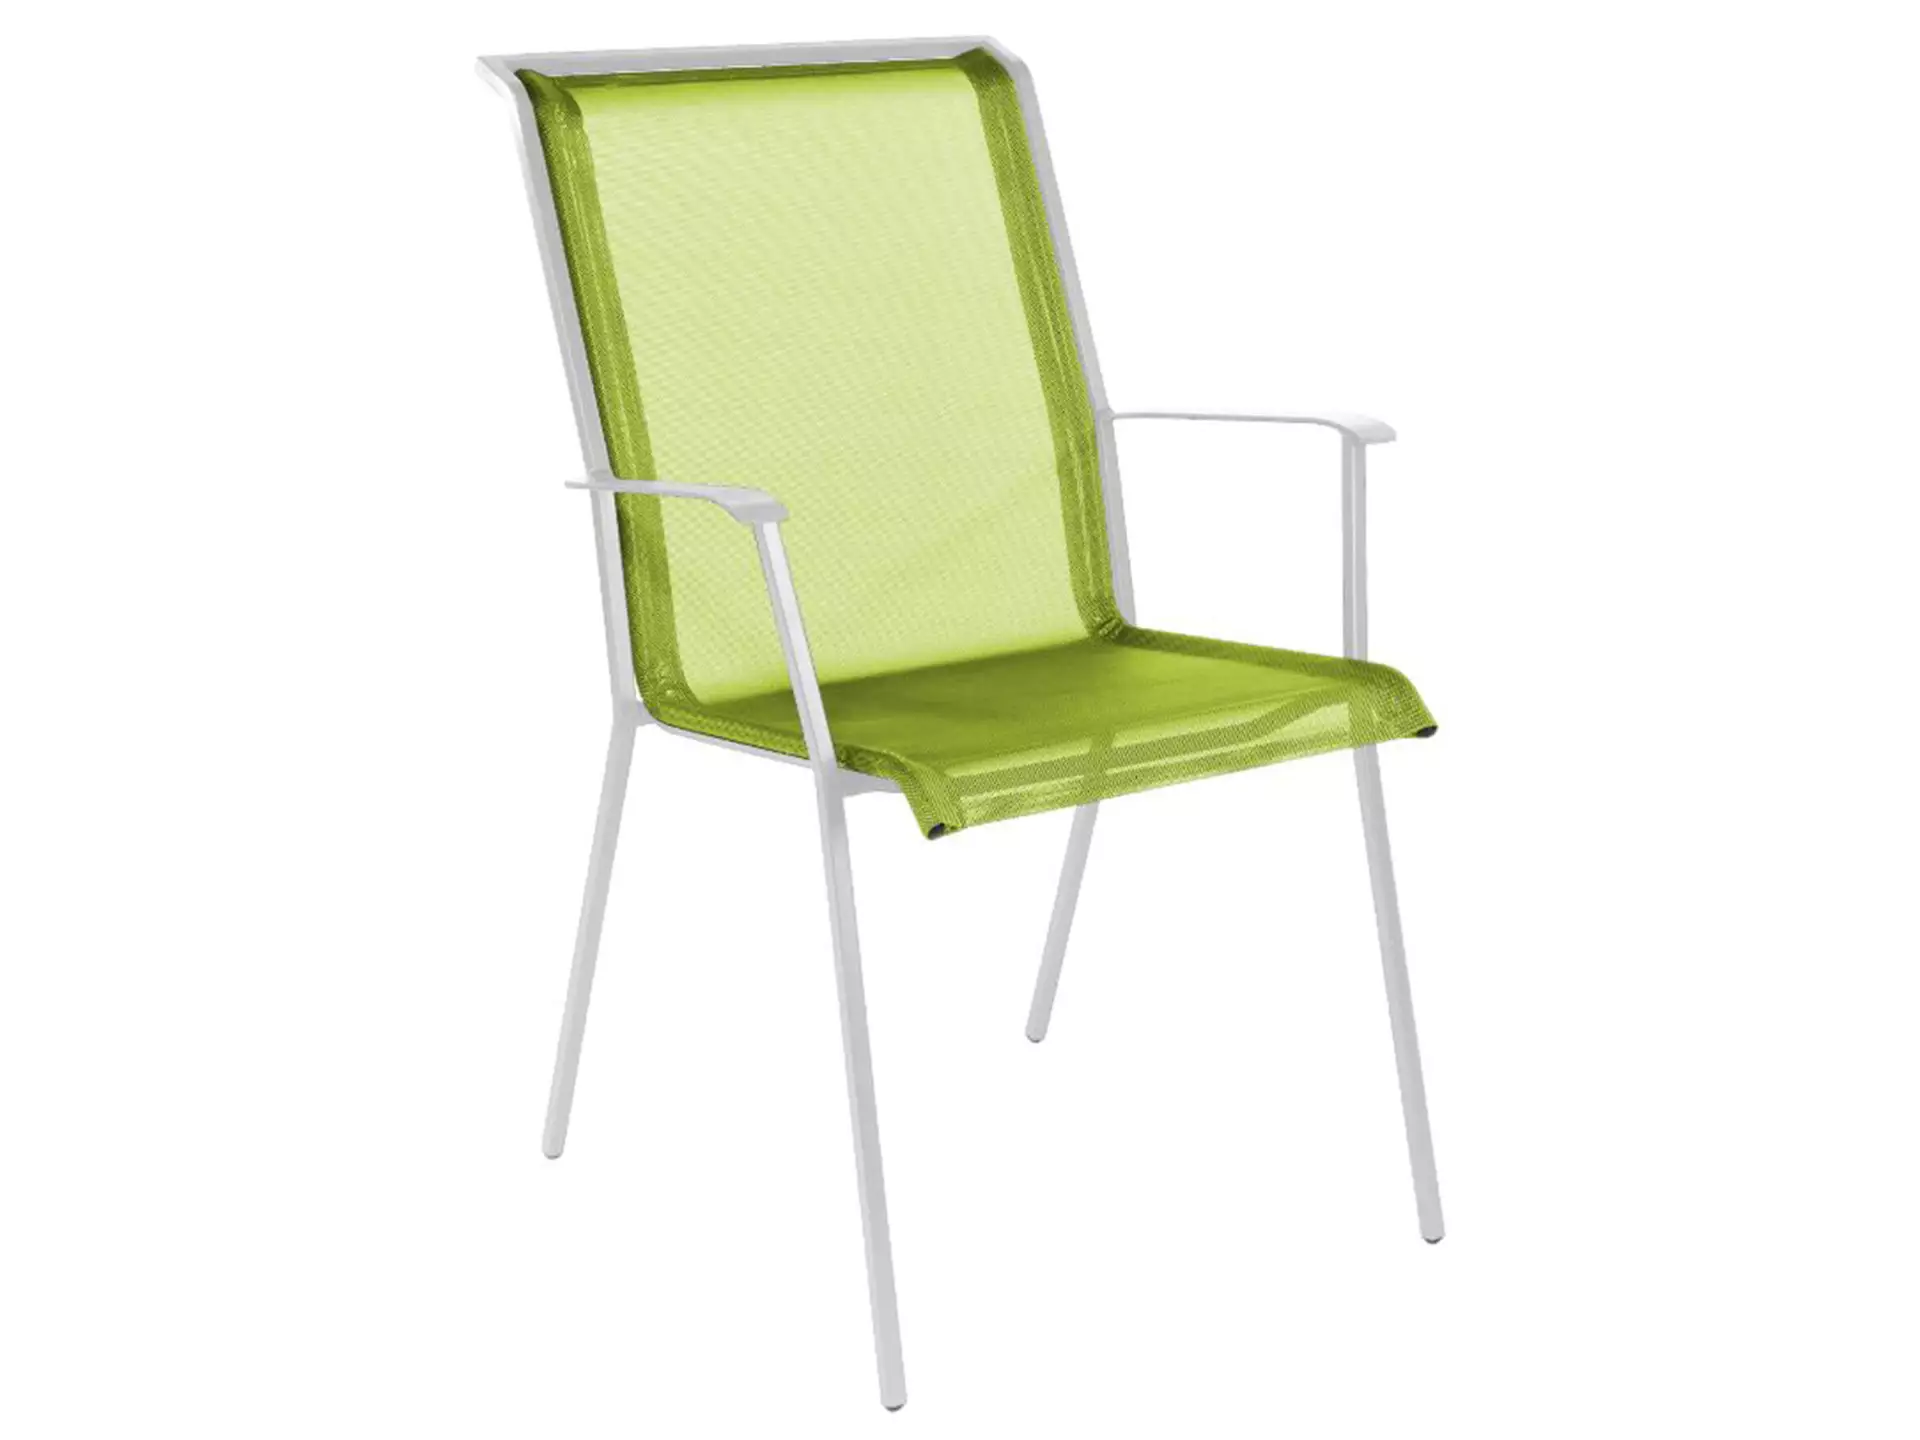 Matten-Sessel Chur Schaffner / Farbe: Hellgrün